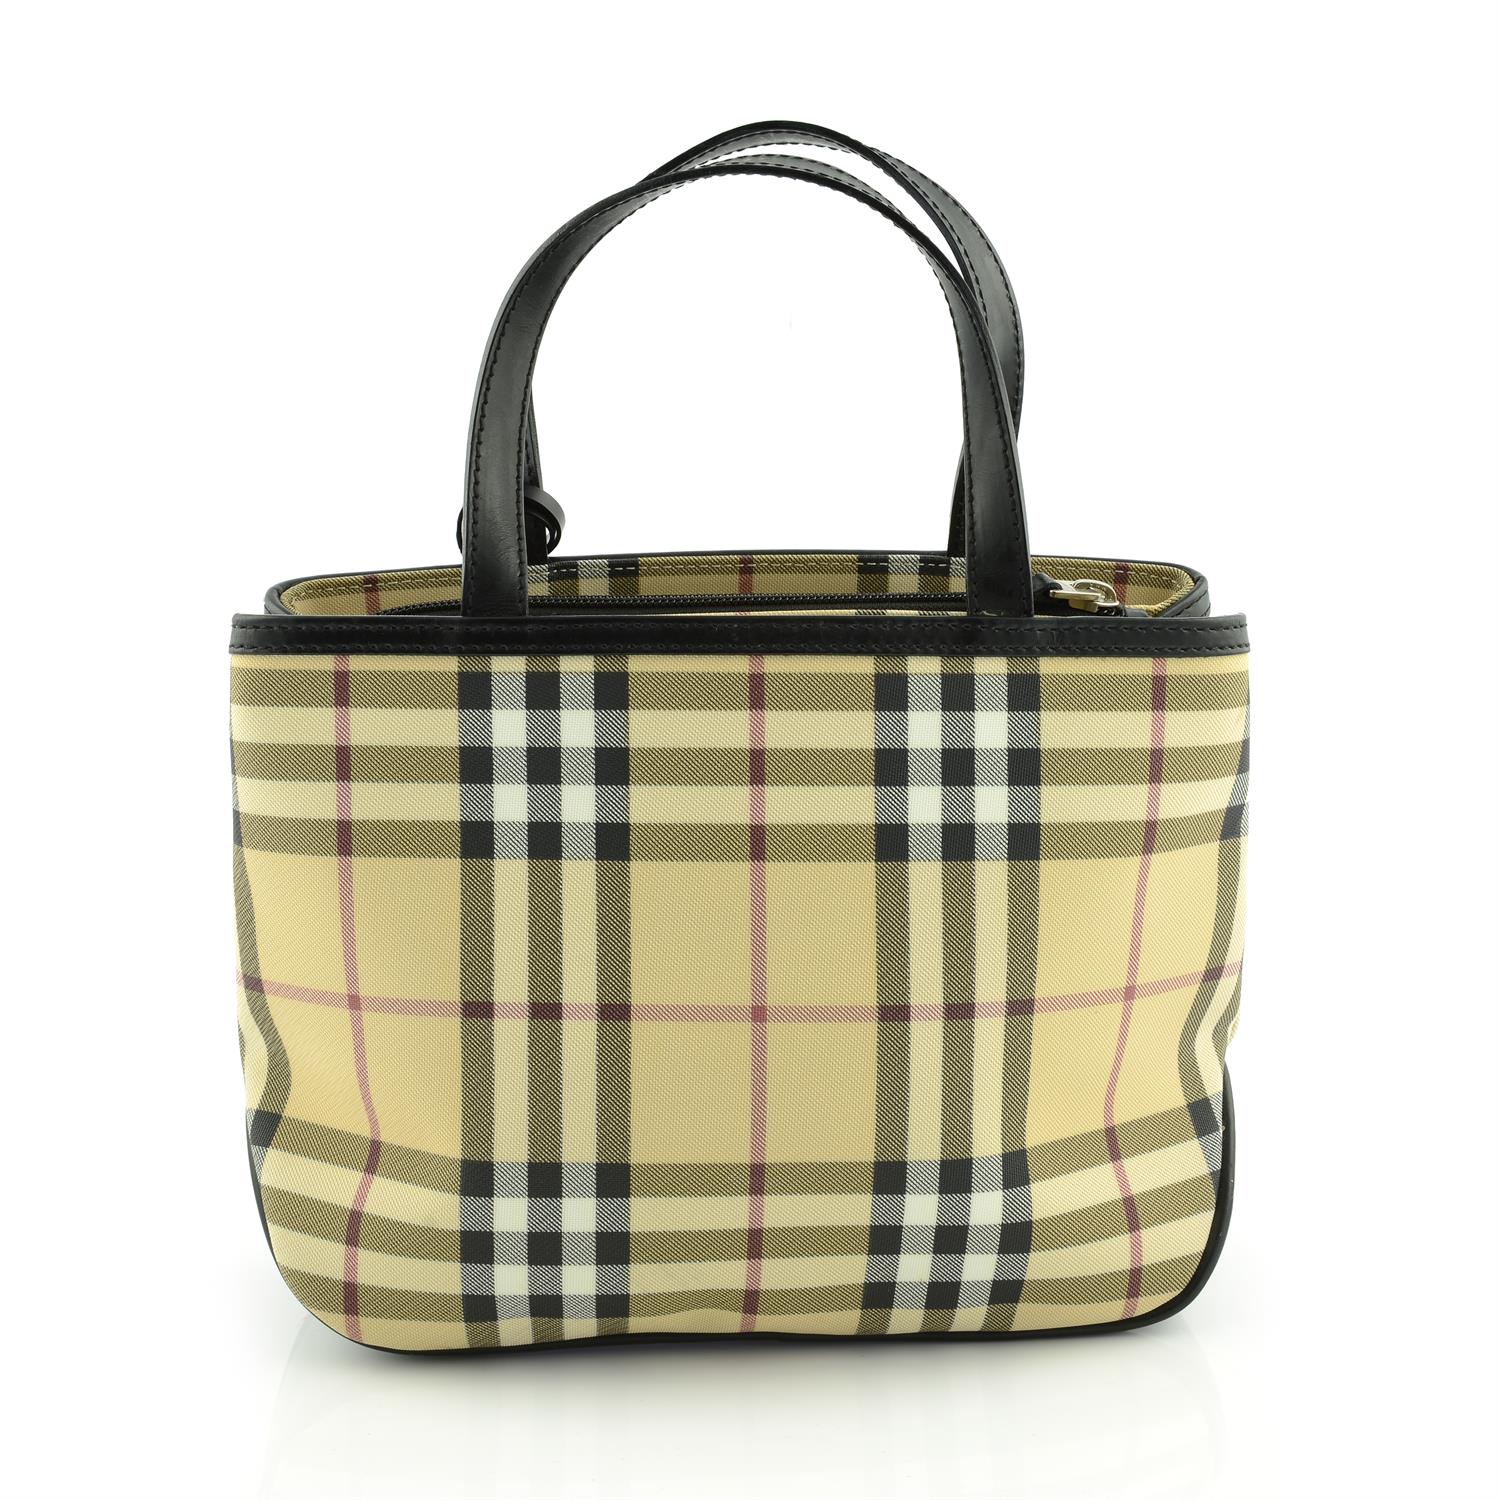 BURBERRY- a Nova Check handbag. - Image 2 of 5